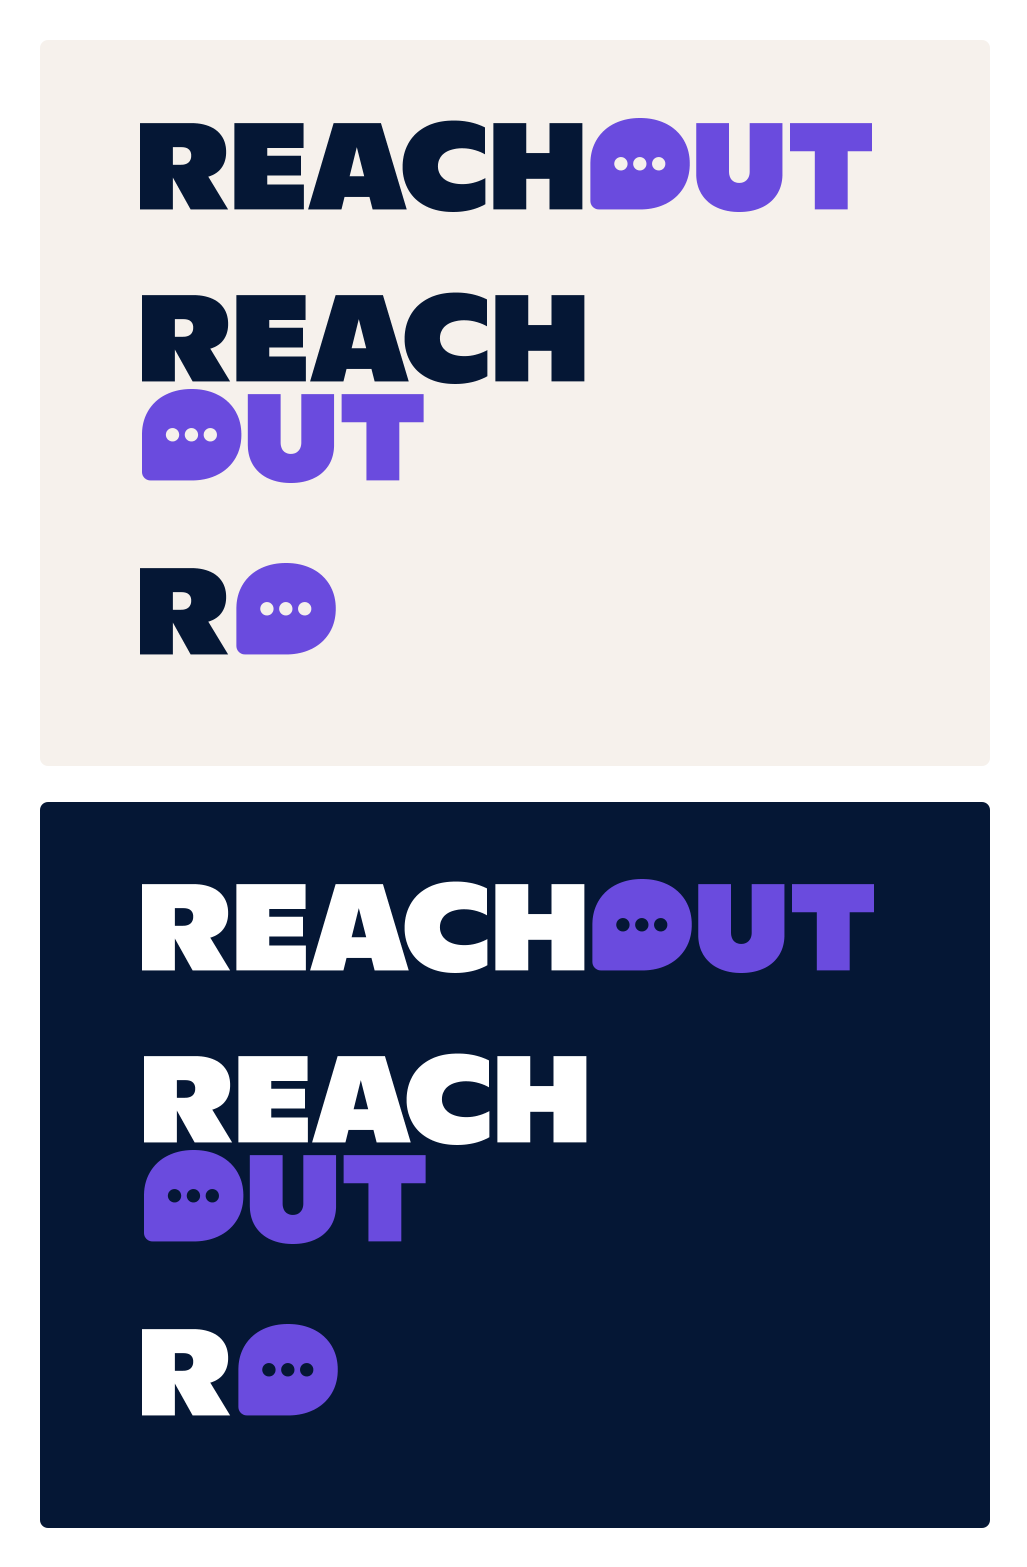 reachout-02